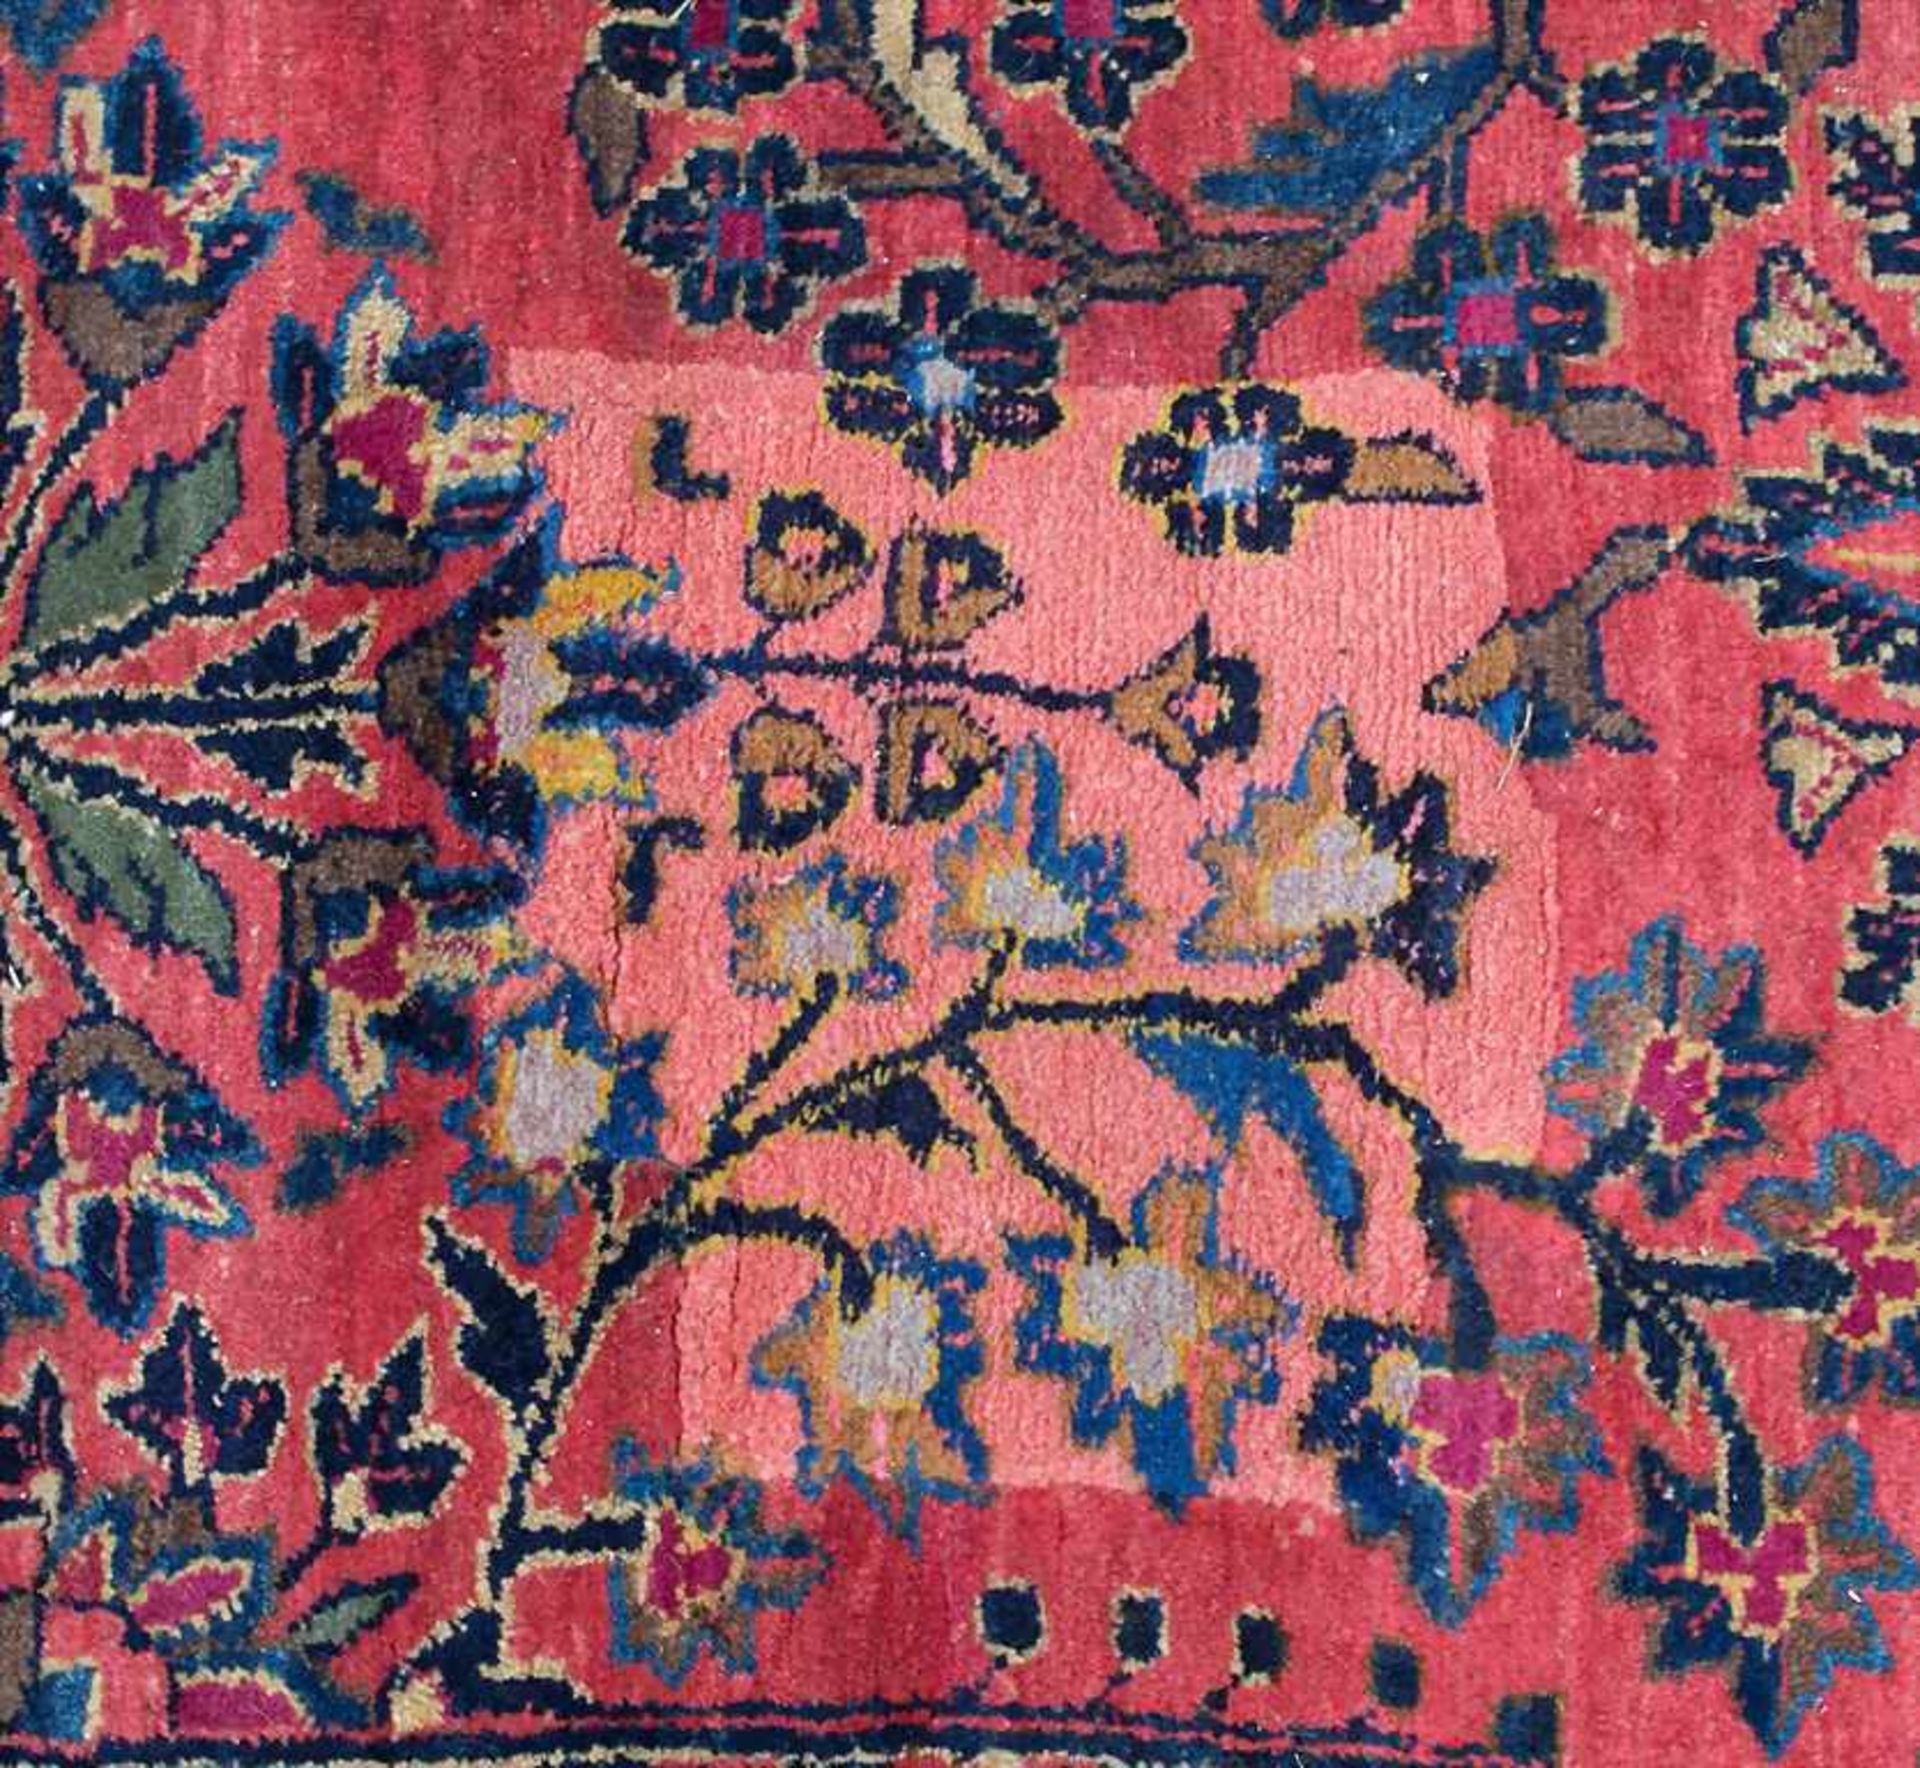 Orientteppich 'Saruk' / An oriental carpet 'Saruk'Material: Wolle auf Baumwolle, Maße: 200 x 140 cm, - Bild 5 aus 8